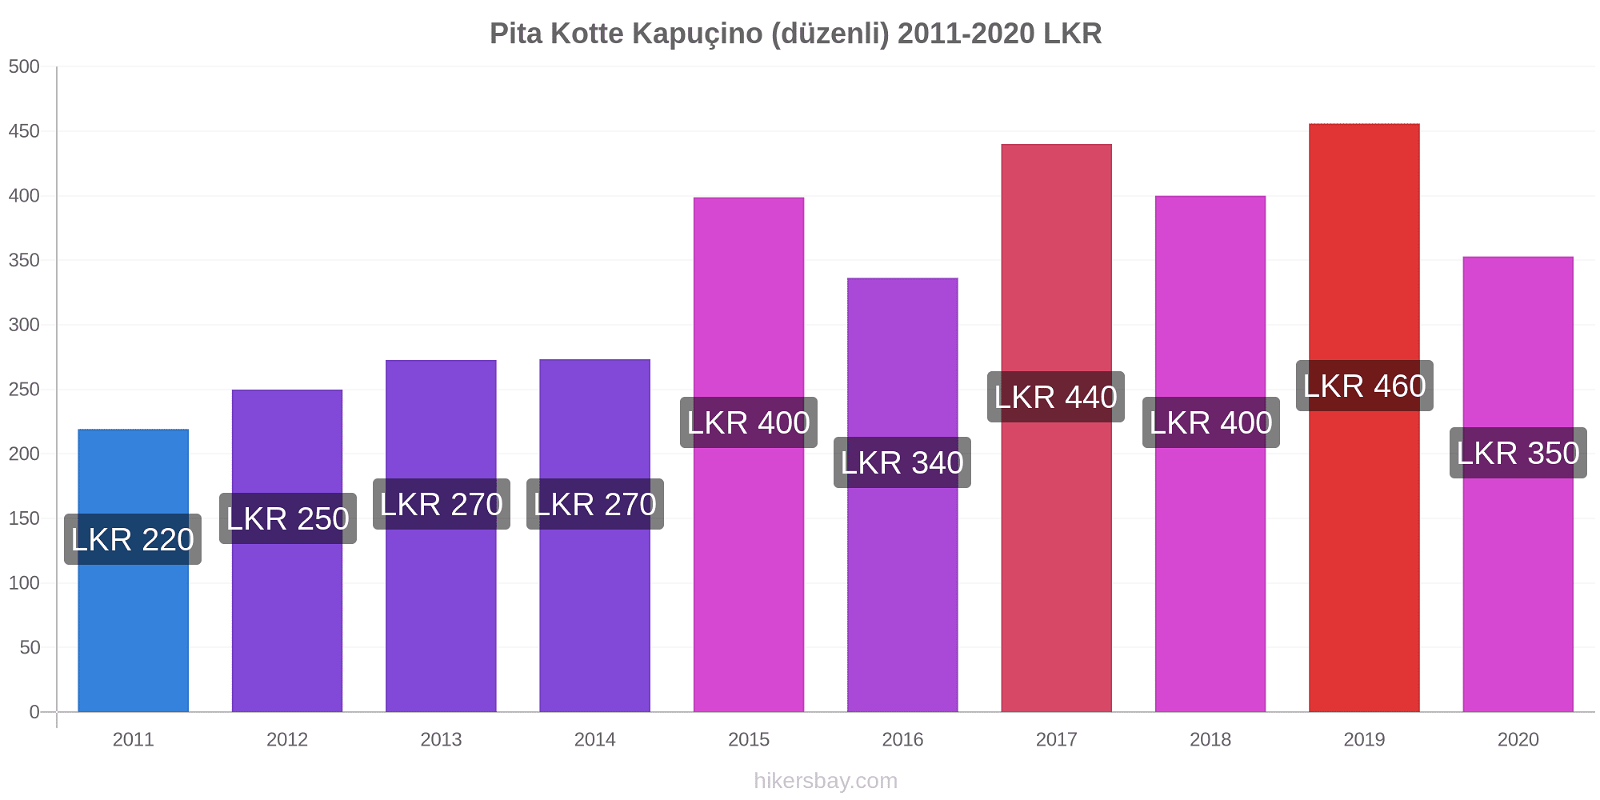 Pita Kotte fiyat değişiklikleri Kapuçino (düzenli) hikersbay.com